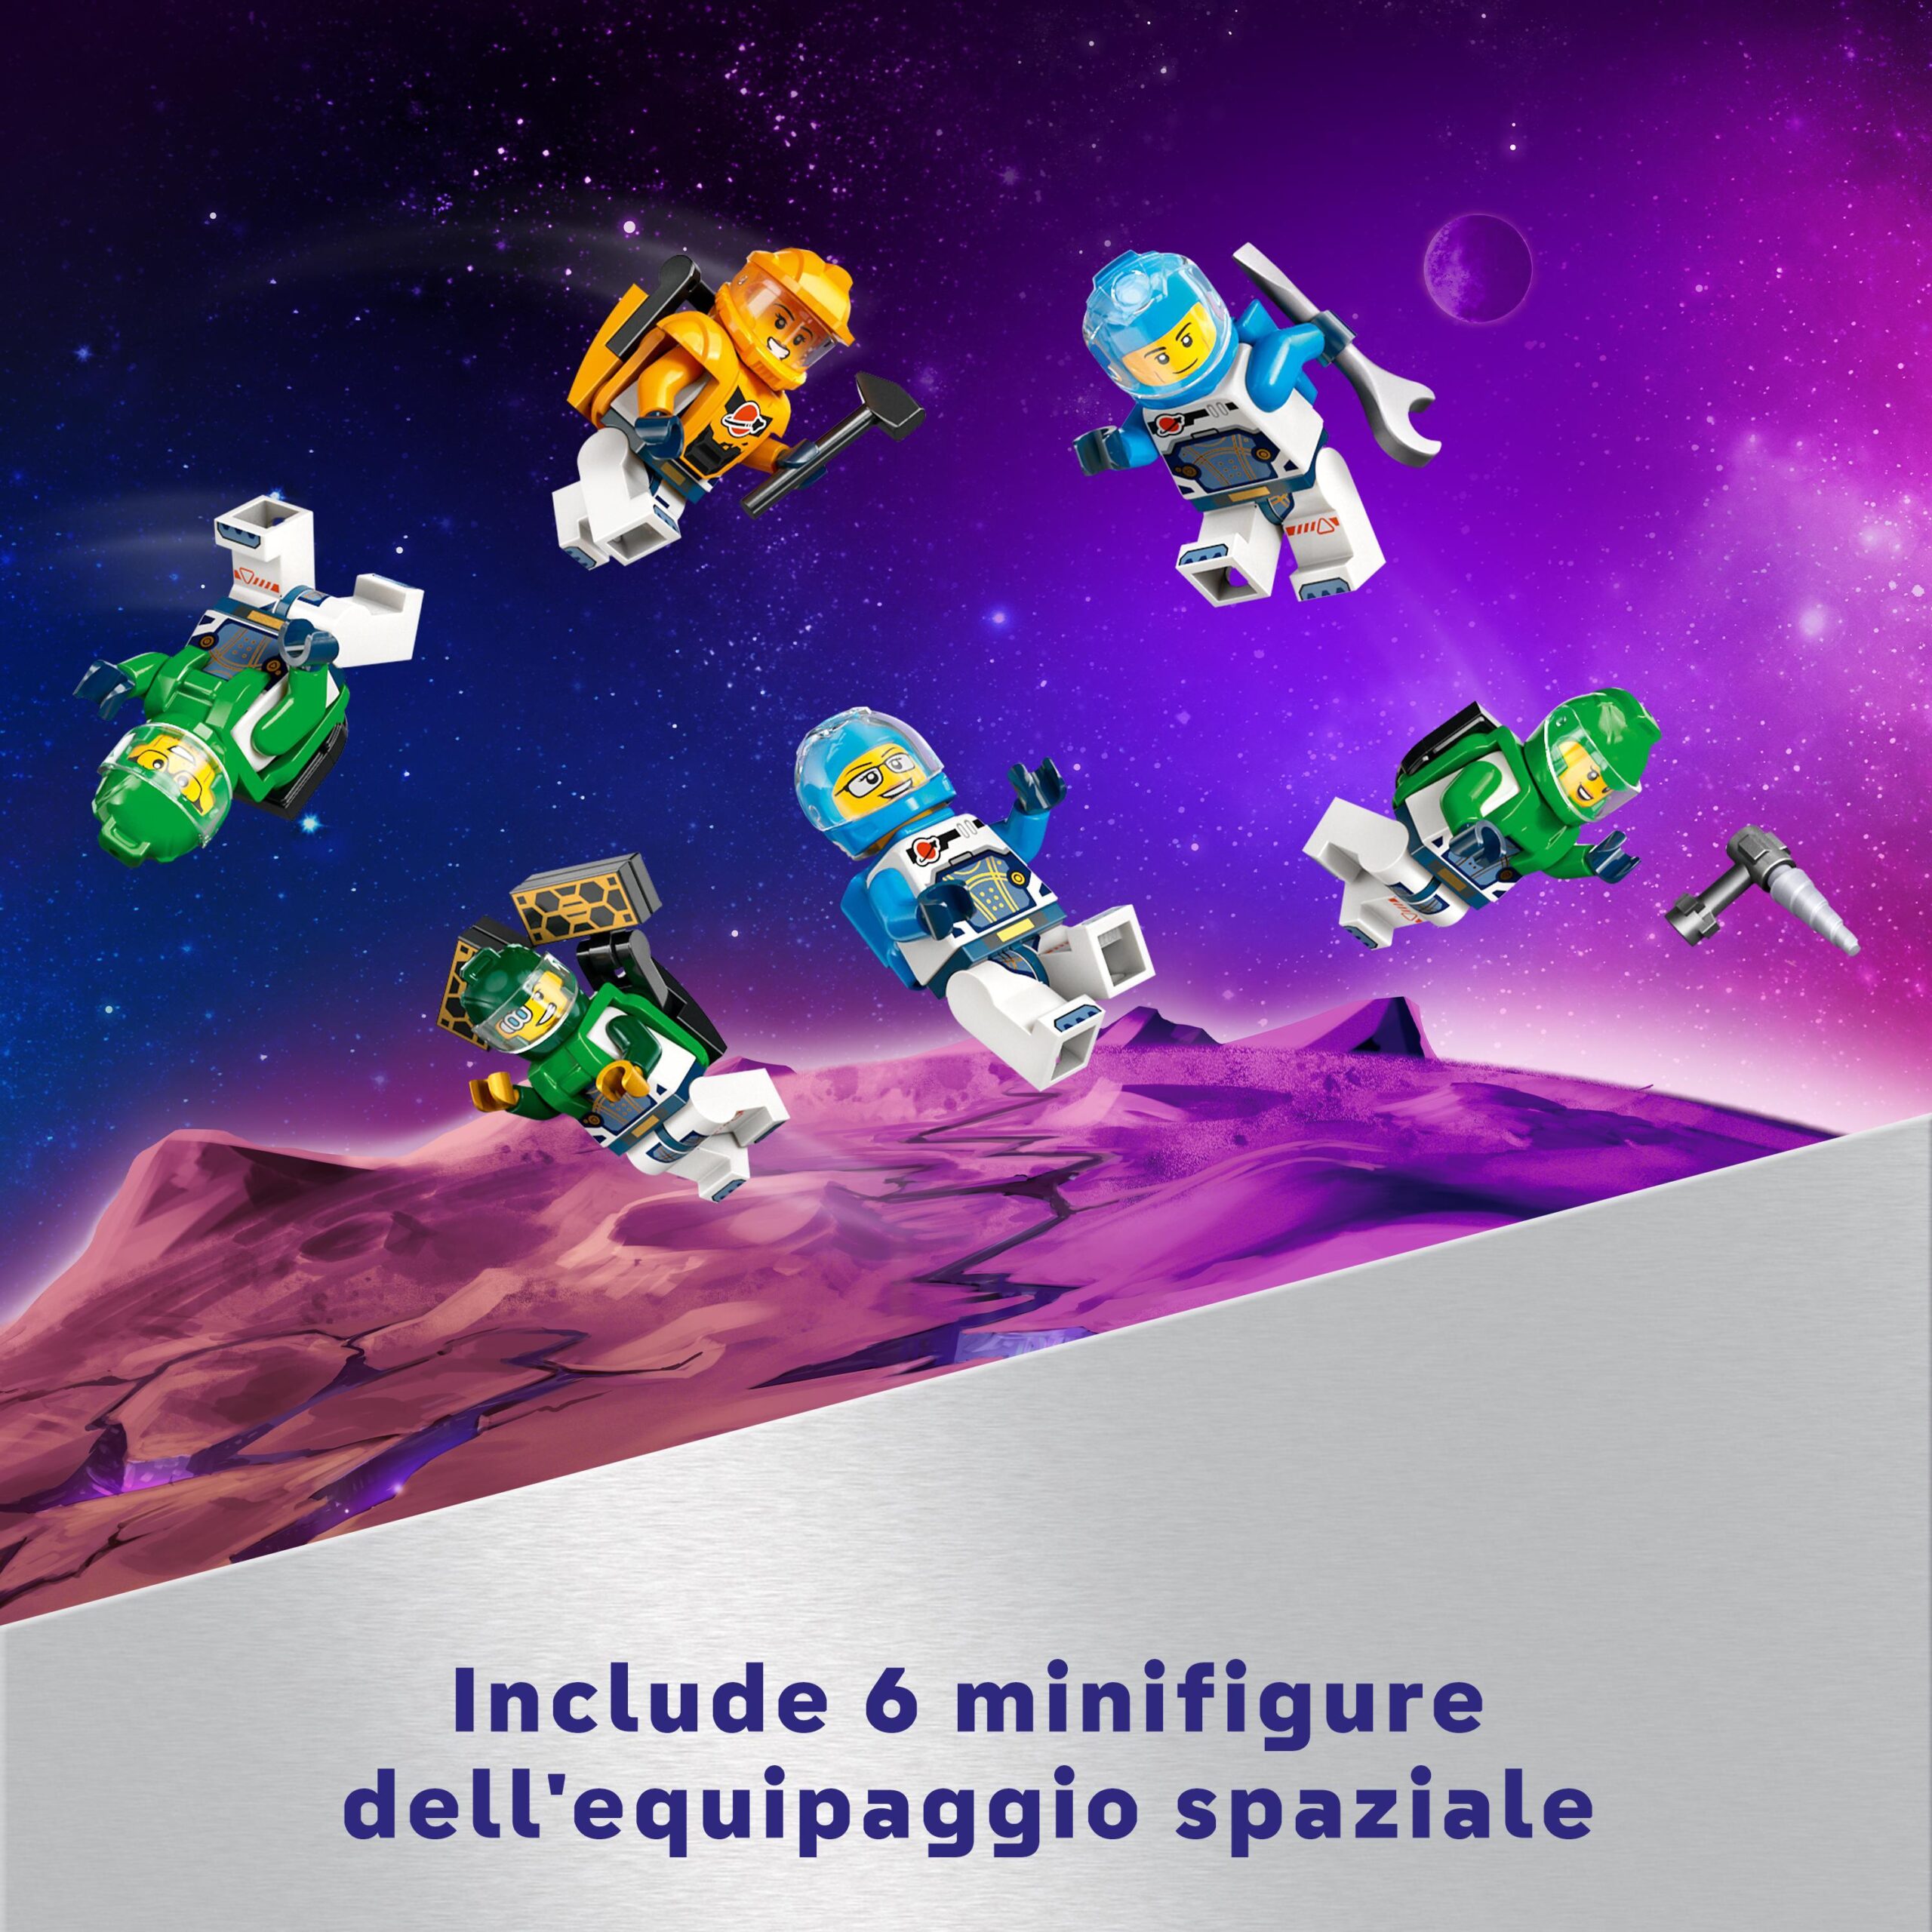 Lego city 60433 stazione spaziale modulare, modellino da costruire per collegare astronavi e moduli gioco per bambini da 7+ - LEGO CITY